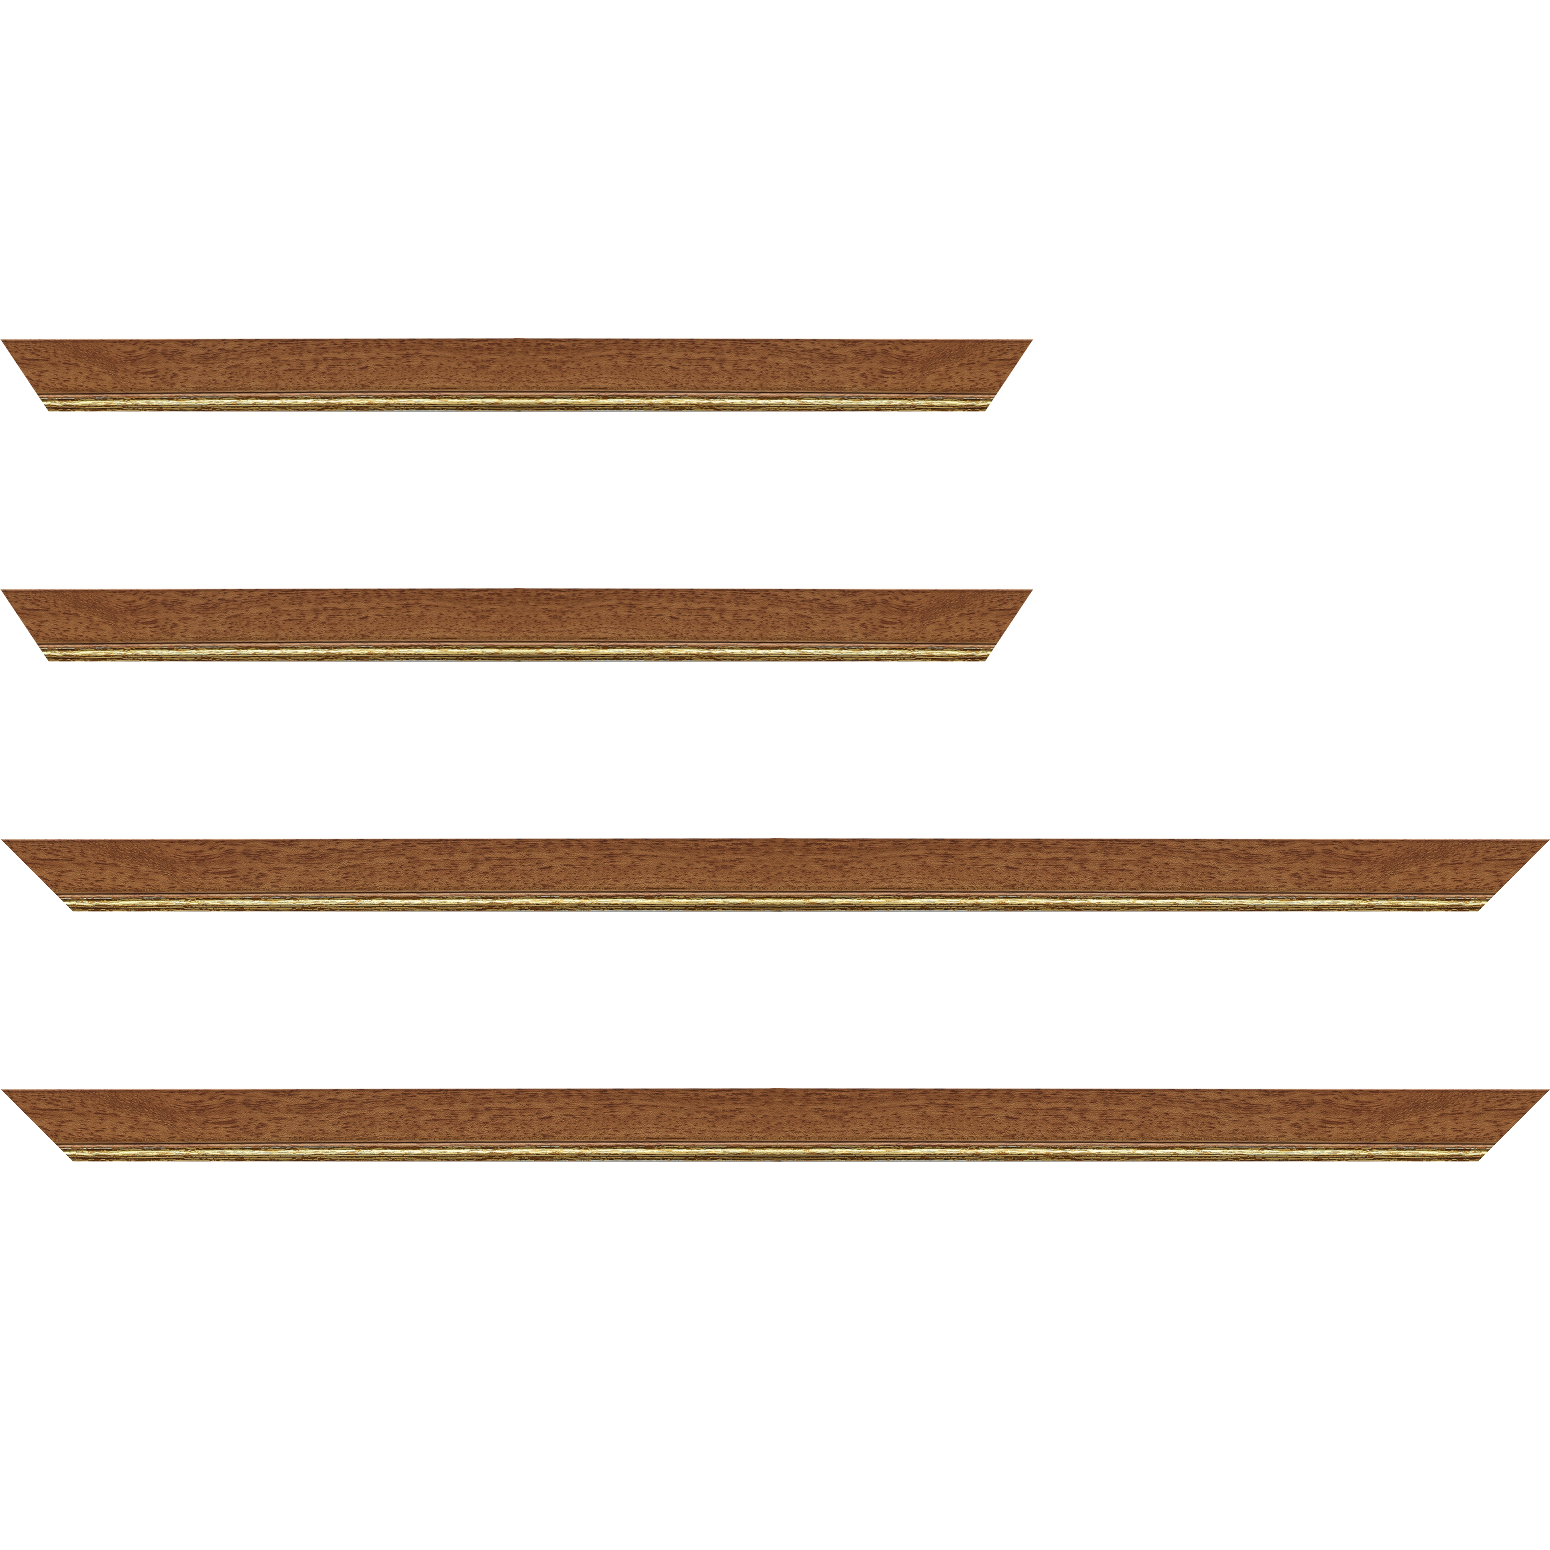 Baguette bois profil plat largeur 2.5cm couleur marron ton bois filet or - 30x90